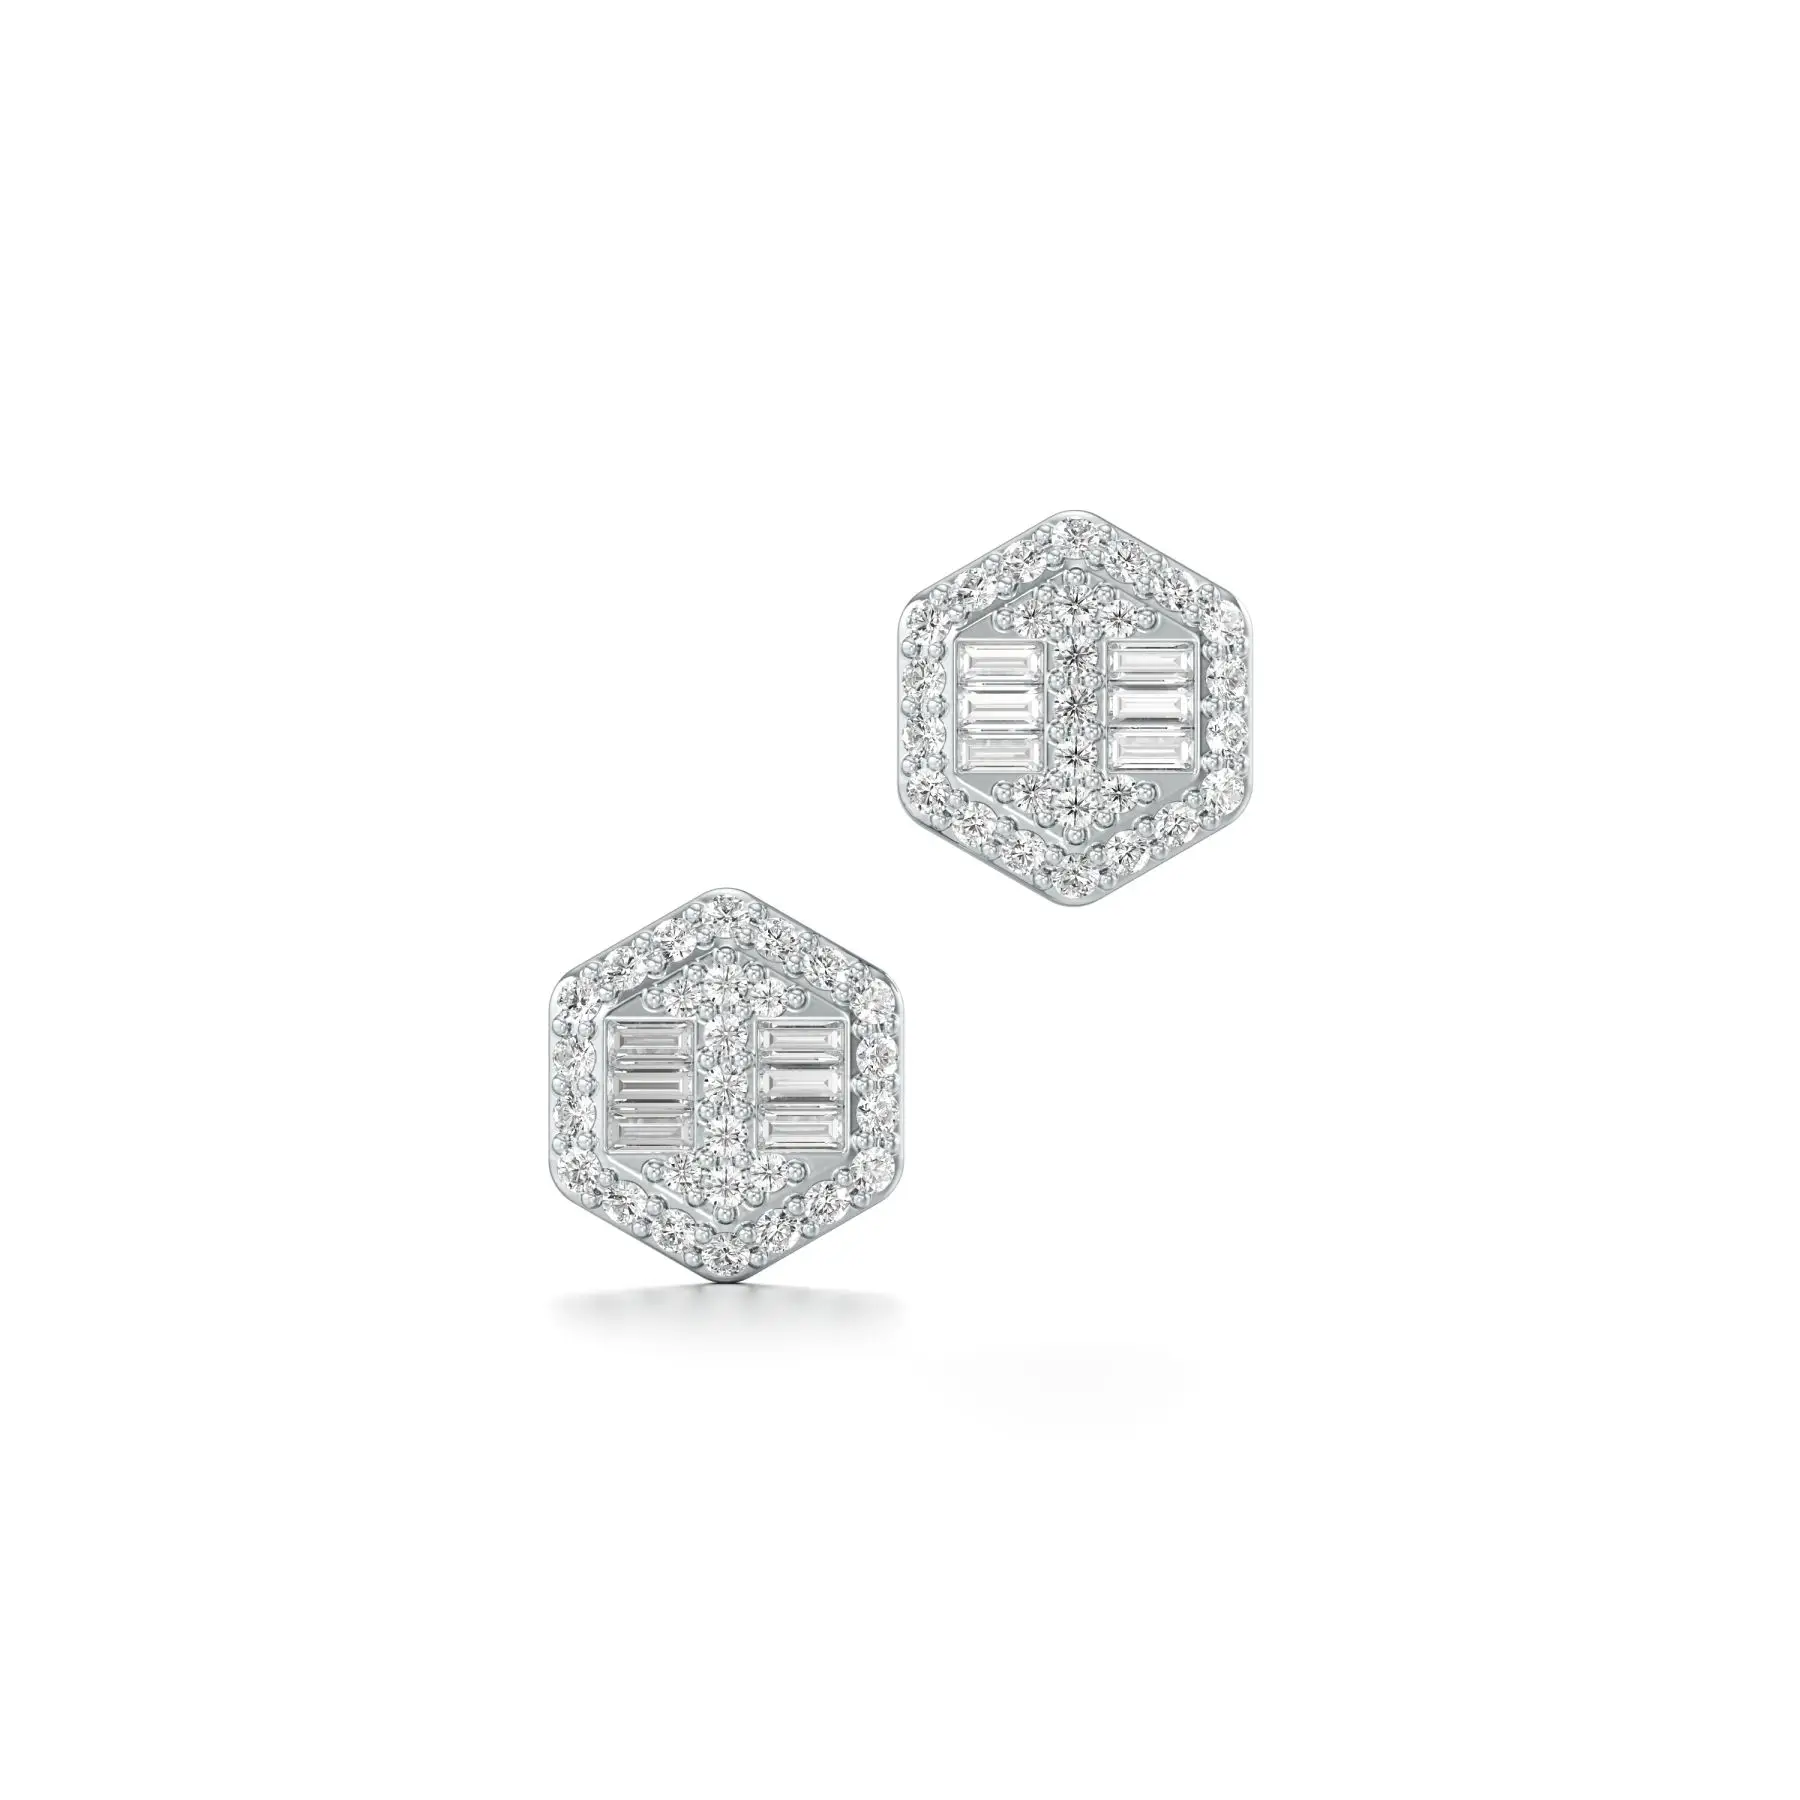 Frosty Hexad Diamond Earrings in White 10k Gold